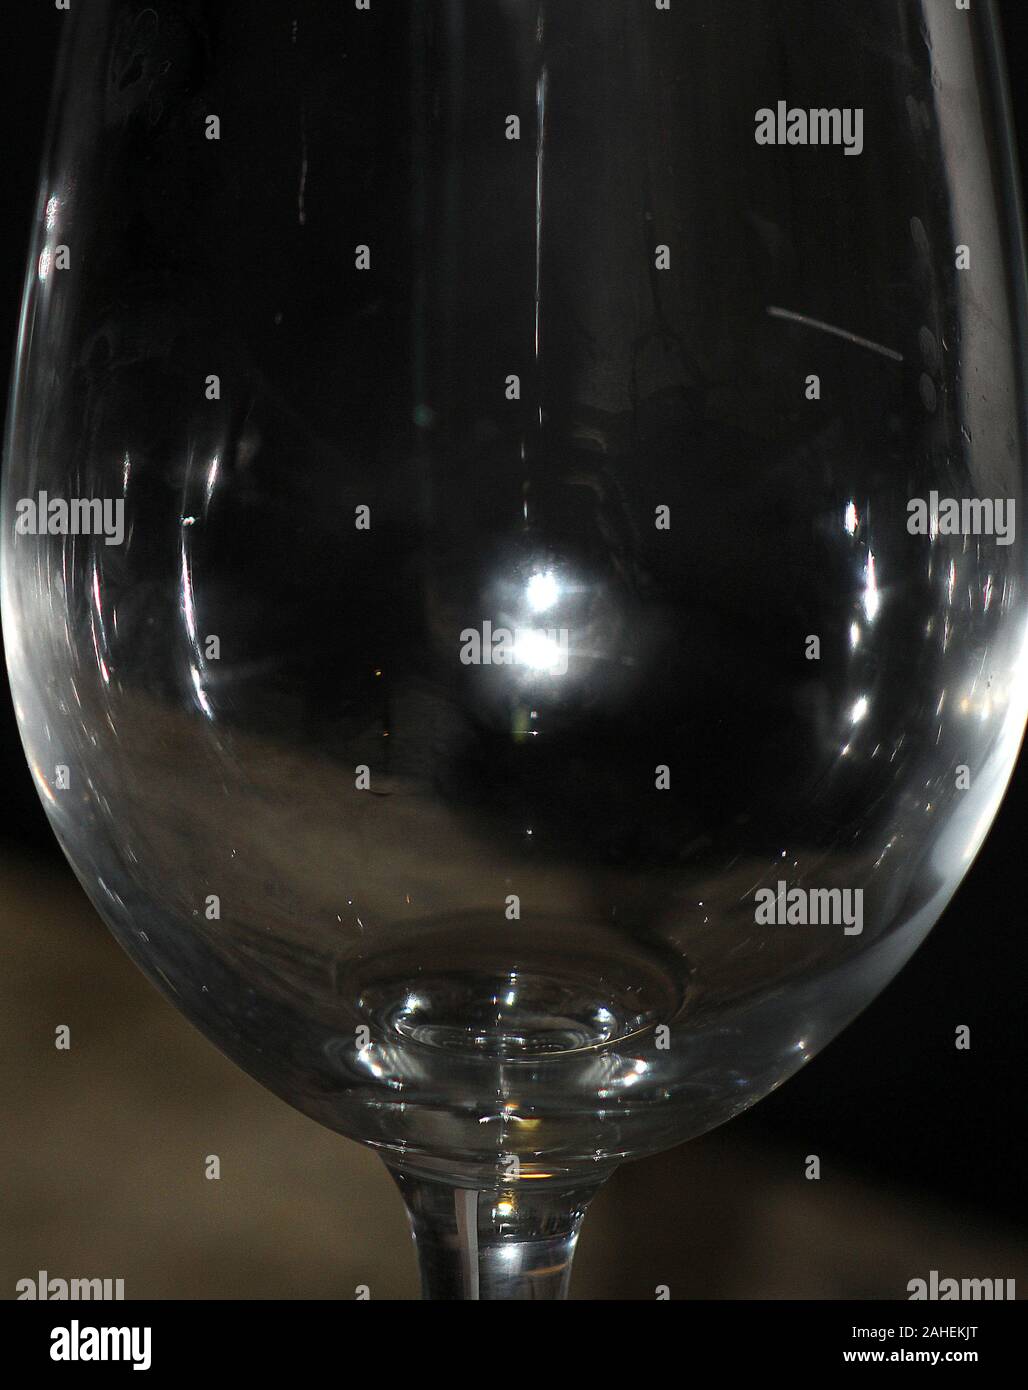 https://c8.alamy.com/comp/2AHEKJT/moonlight-reflected-in-an-empty-wine-glass-2AHEKJT.jpg